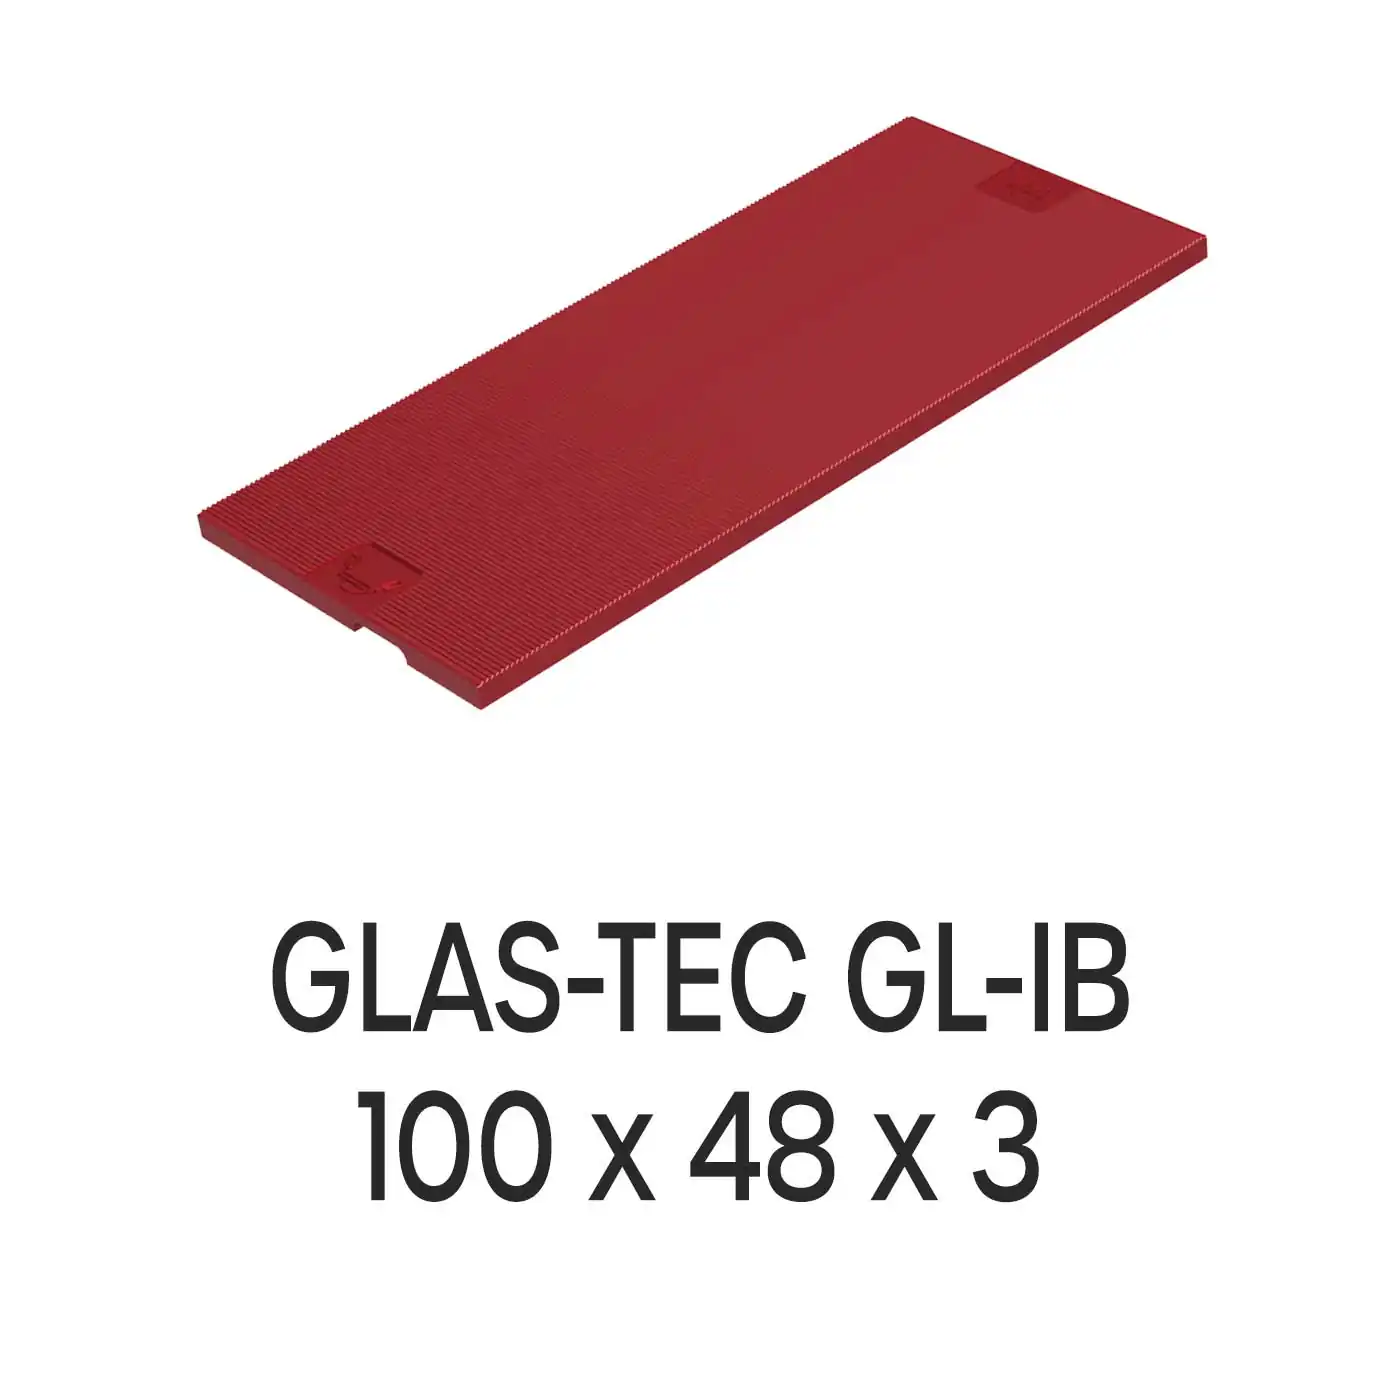 Roto Verglasungsklotz GLAS-TEC GL-IB, 100 x 48 x 3 mm, schwarz, 500 Stück